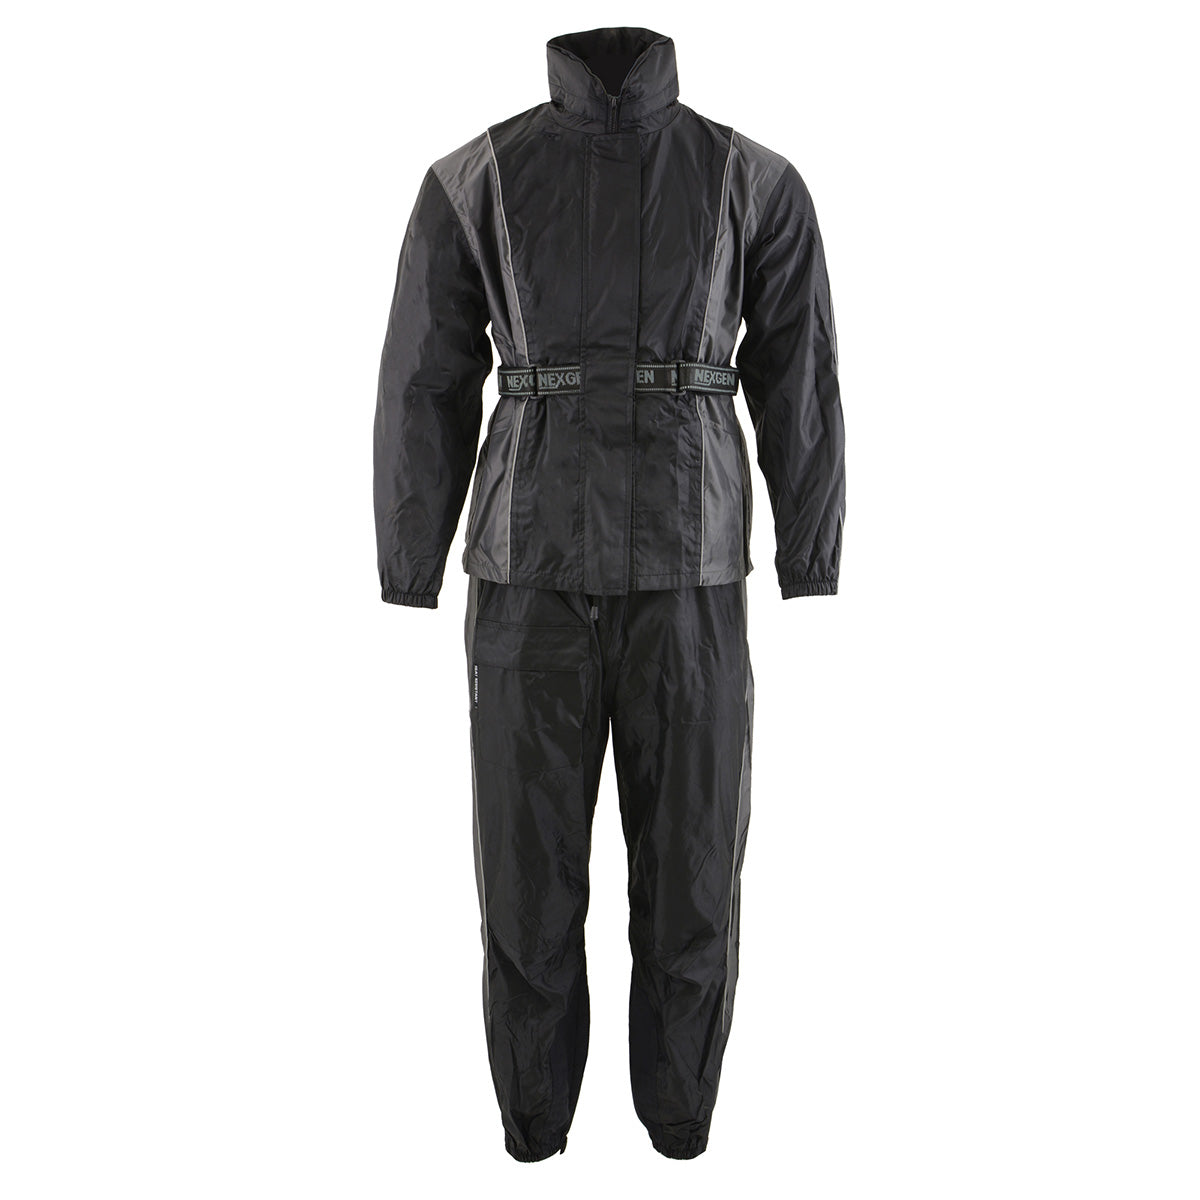 NexGen SH222503 Women's Motorcycle-Outdoors Black and Grey Hooded Water Proof Rain Suit